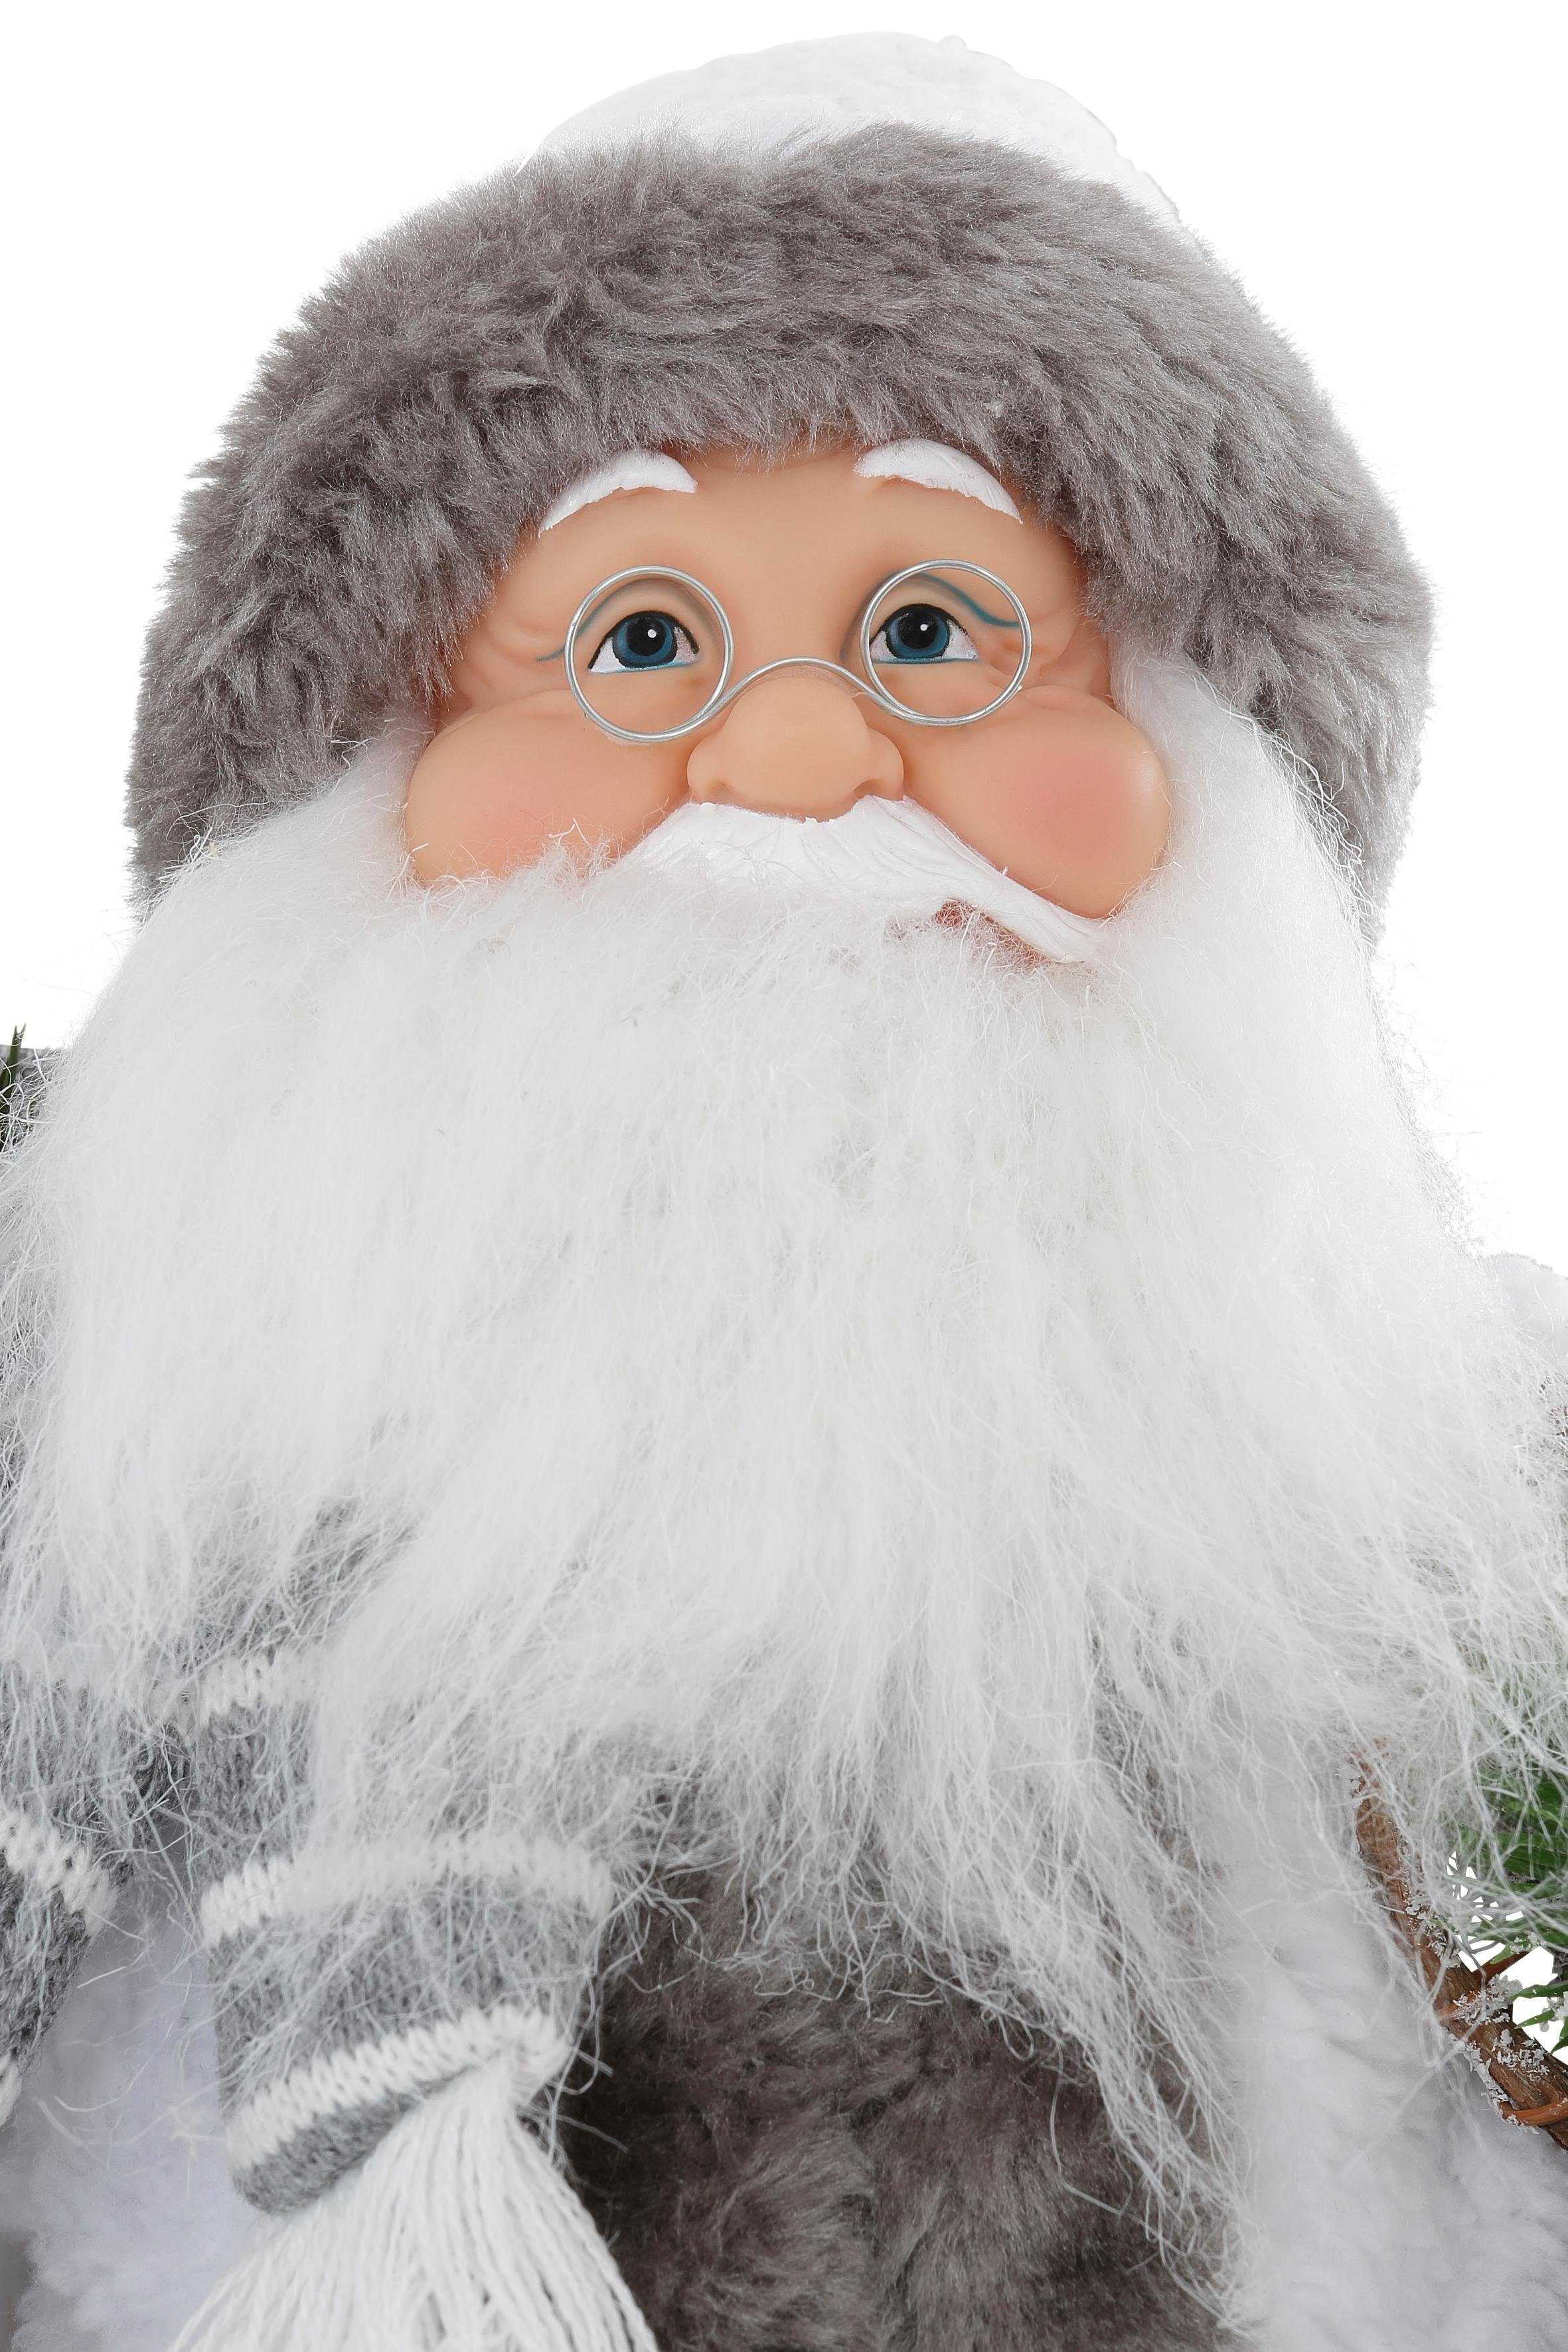 HOSSNER - HOMECOLLECTION Mantel mit Weihnachtsdeko Weihnachtsmann weißem und Laterne, Santa